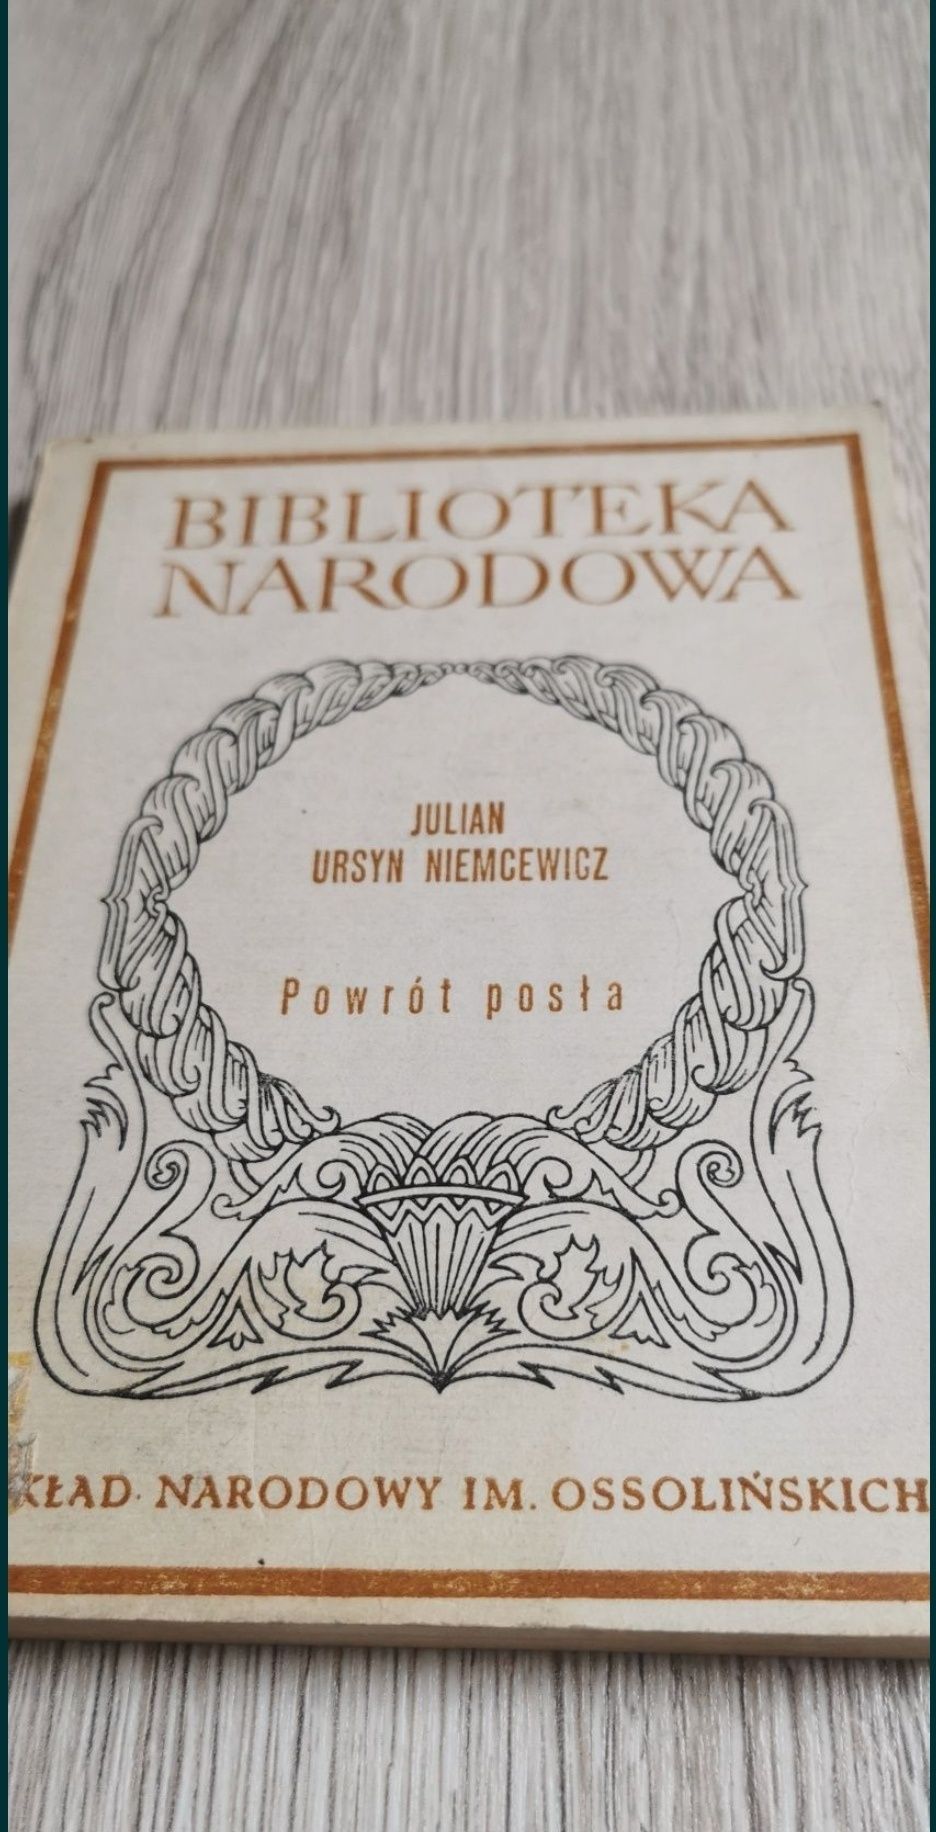 Biblioteka Narodowa
Julian Ursyn Niemcewicz
Powrót posła